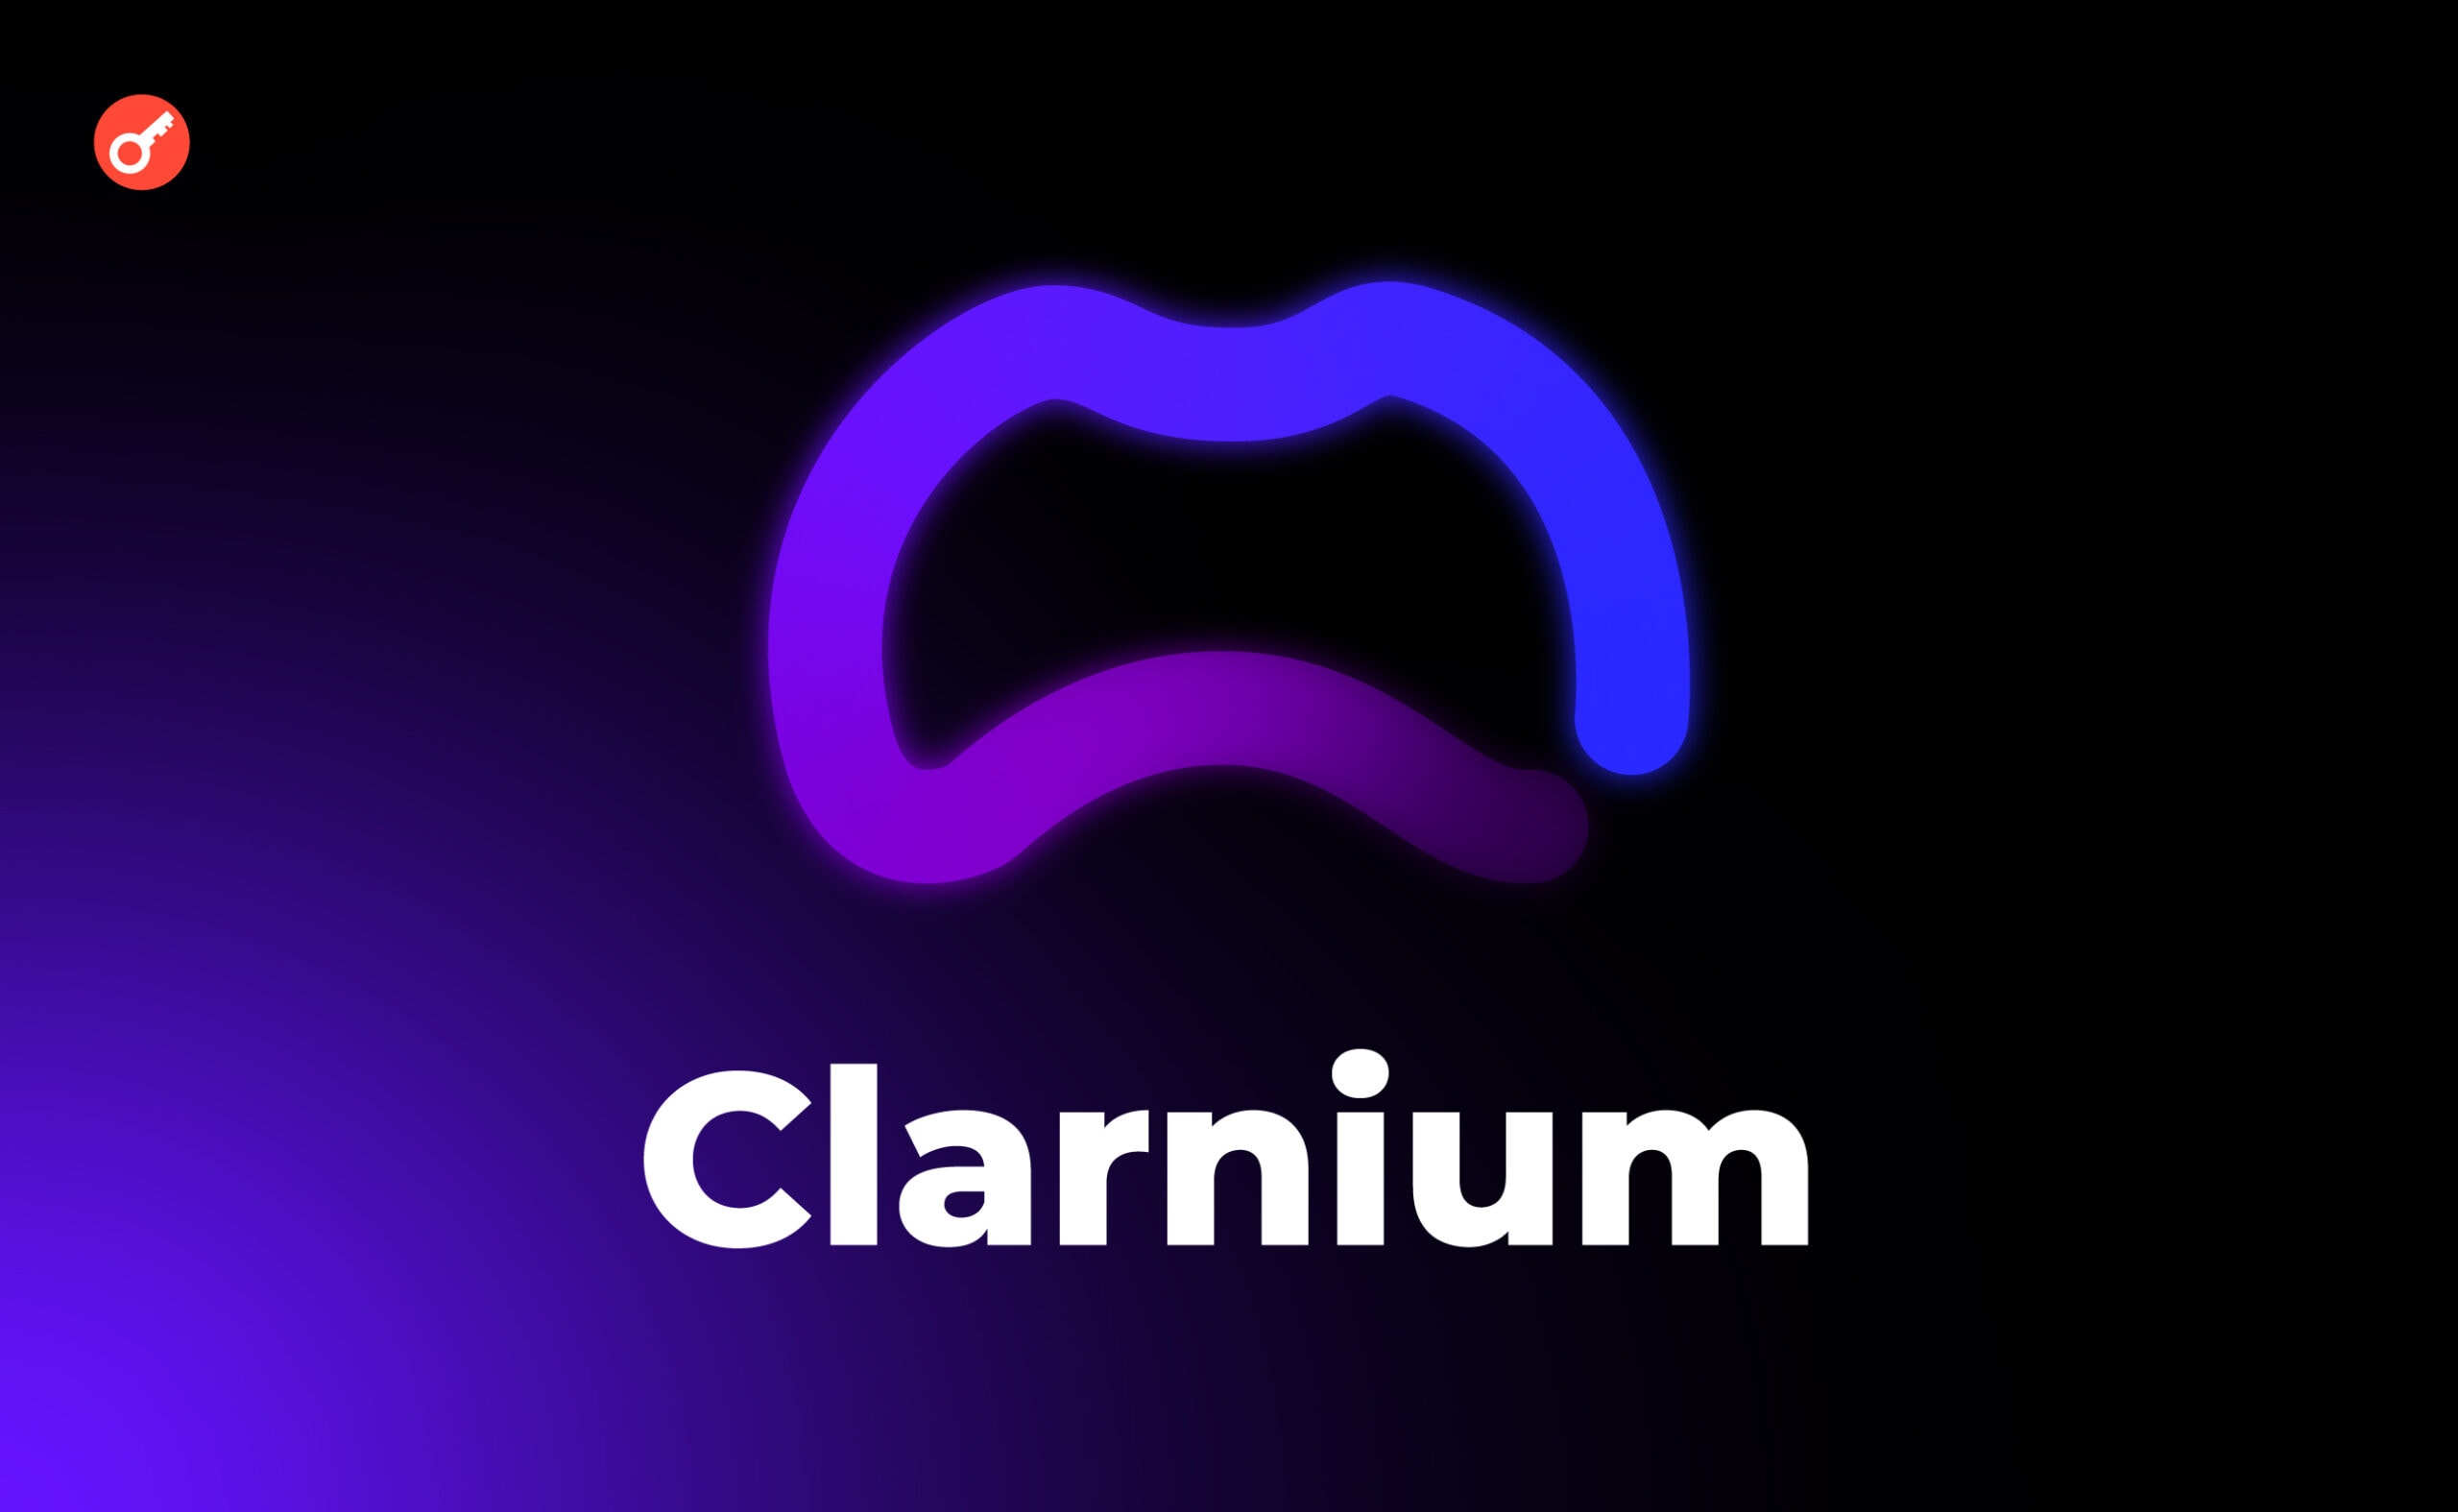 Ukraiński startup kryptowalutowy Clarnium znalazł się wśród 100 najlepszych obiecujących projektów Paris Blockchain Week. Główny kolaż wiadomości.